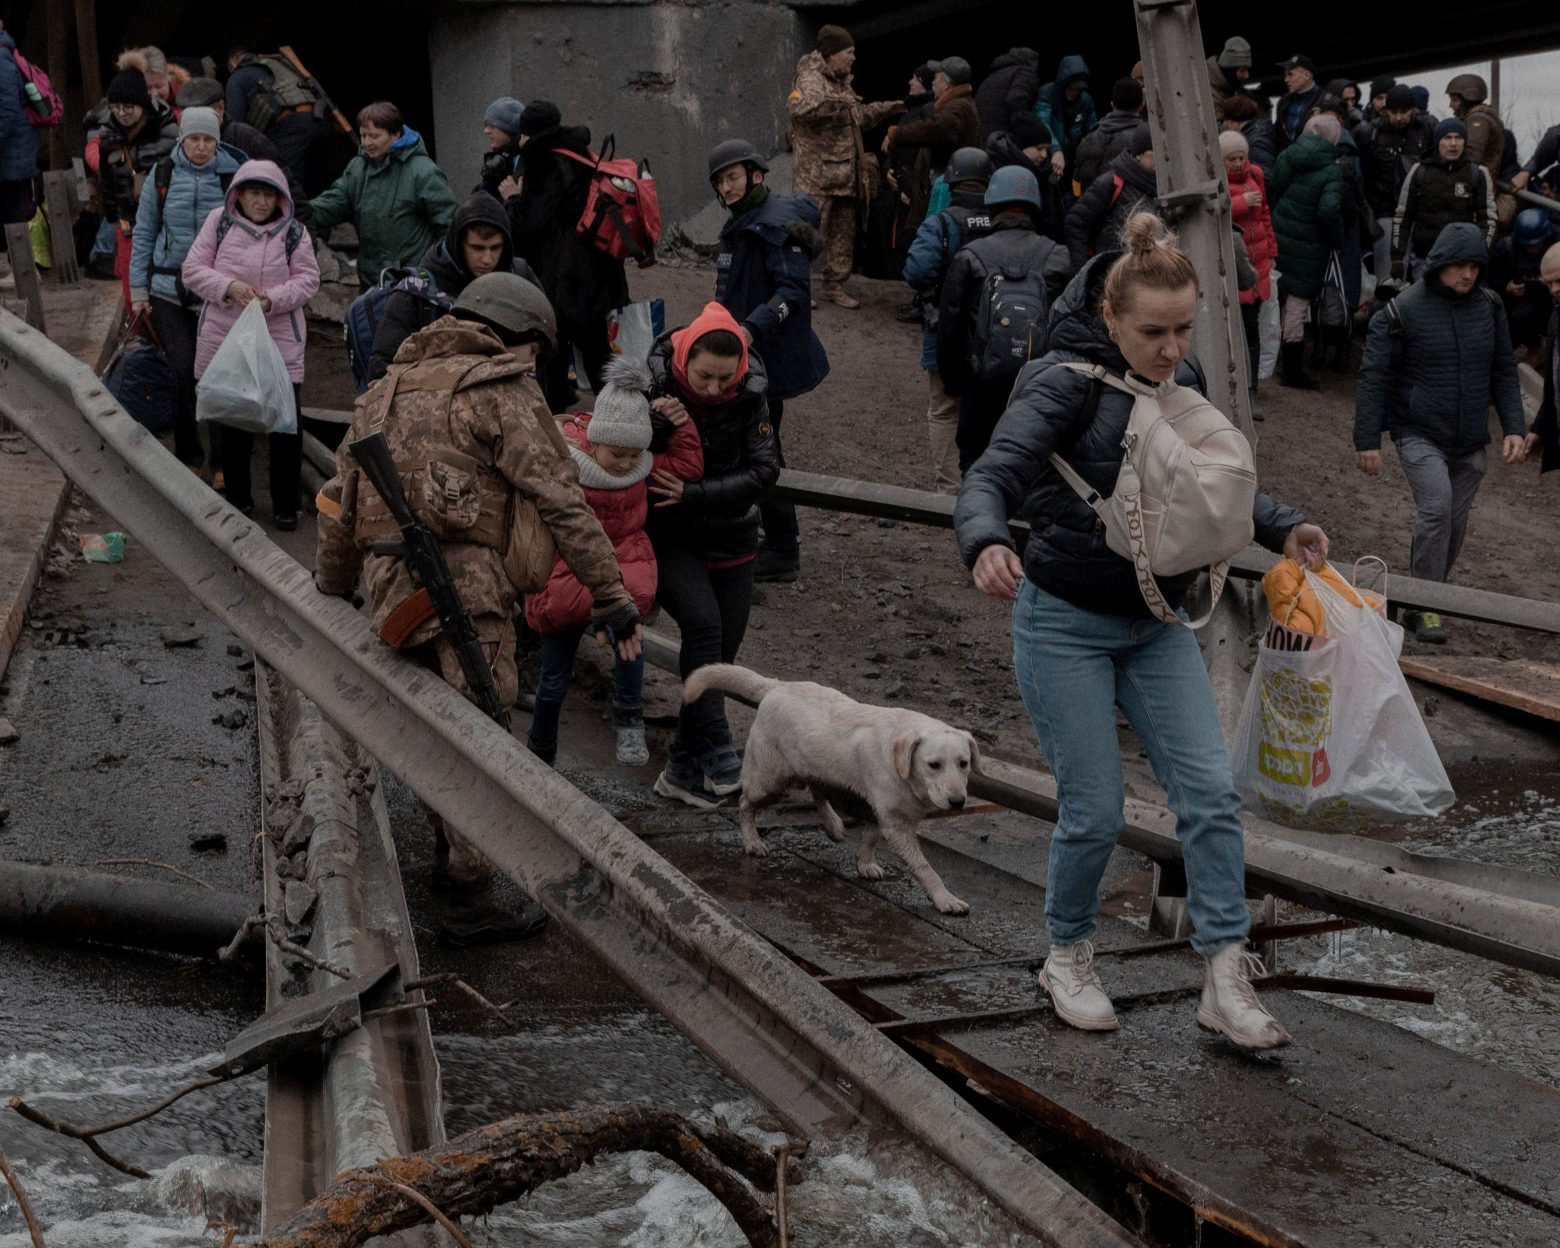 Ουκρανία: Περισσότεροι από 1,5 εκατομμύριο πρόσφυγες έχουν εγκαταλείψει τη χώρα, σύμφωνα με τον ΟΗΕ